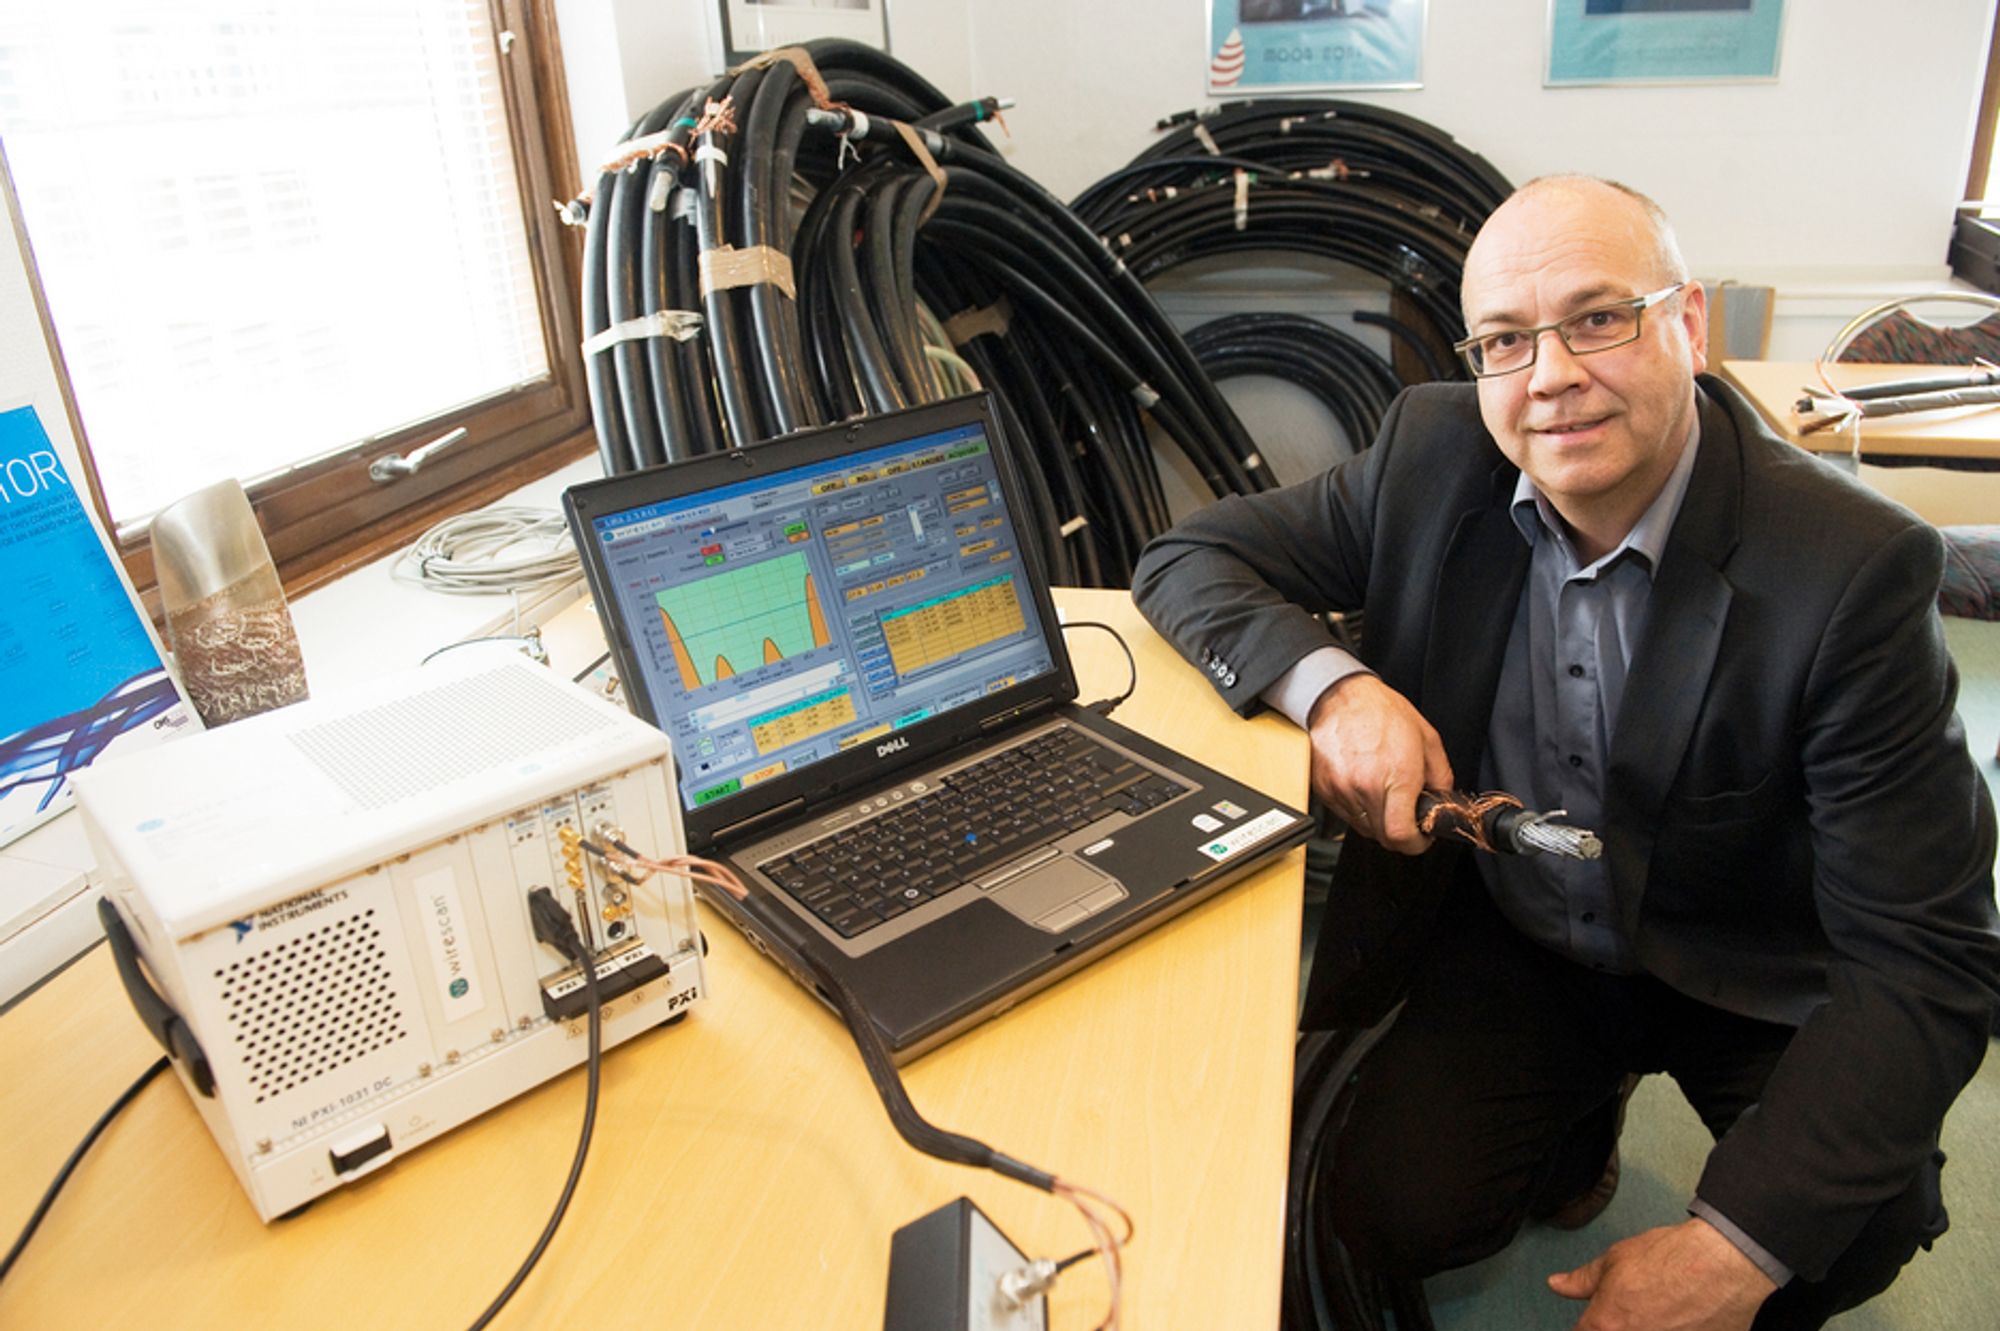 OVERVÅKER SJØKABLER: Direktør Per Nossen i selskapet Wirescan overvåker elektriske kabler i atomkraftverk og sjøkabler i olje- og vindbransjen. Teknologien avslører om kablene trenger vedlikehold.